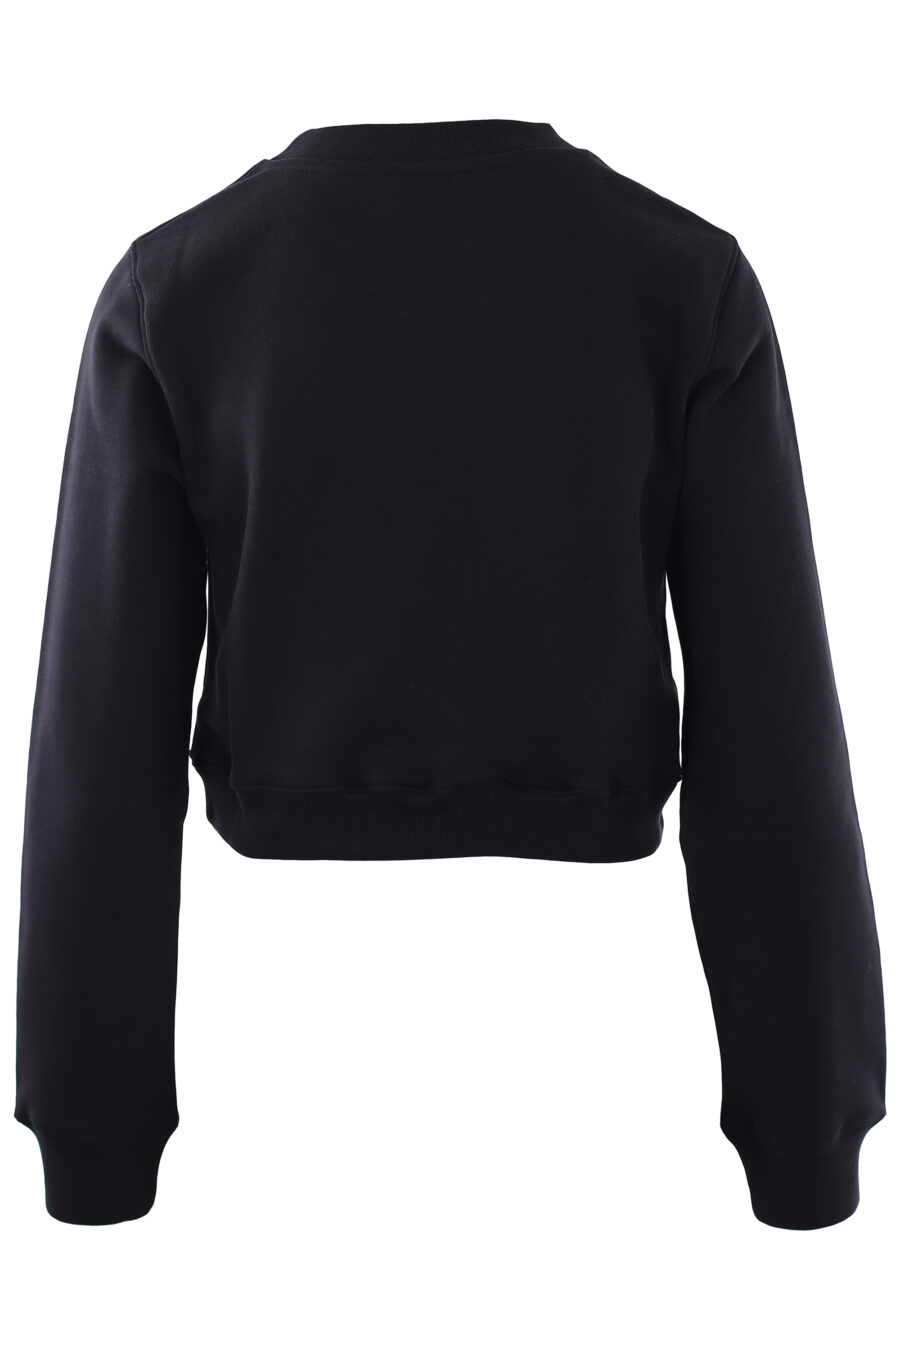 Kurzes schwarzes Sweatshirt mit Bärenschild - IMG 0281